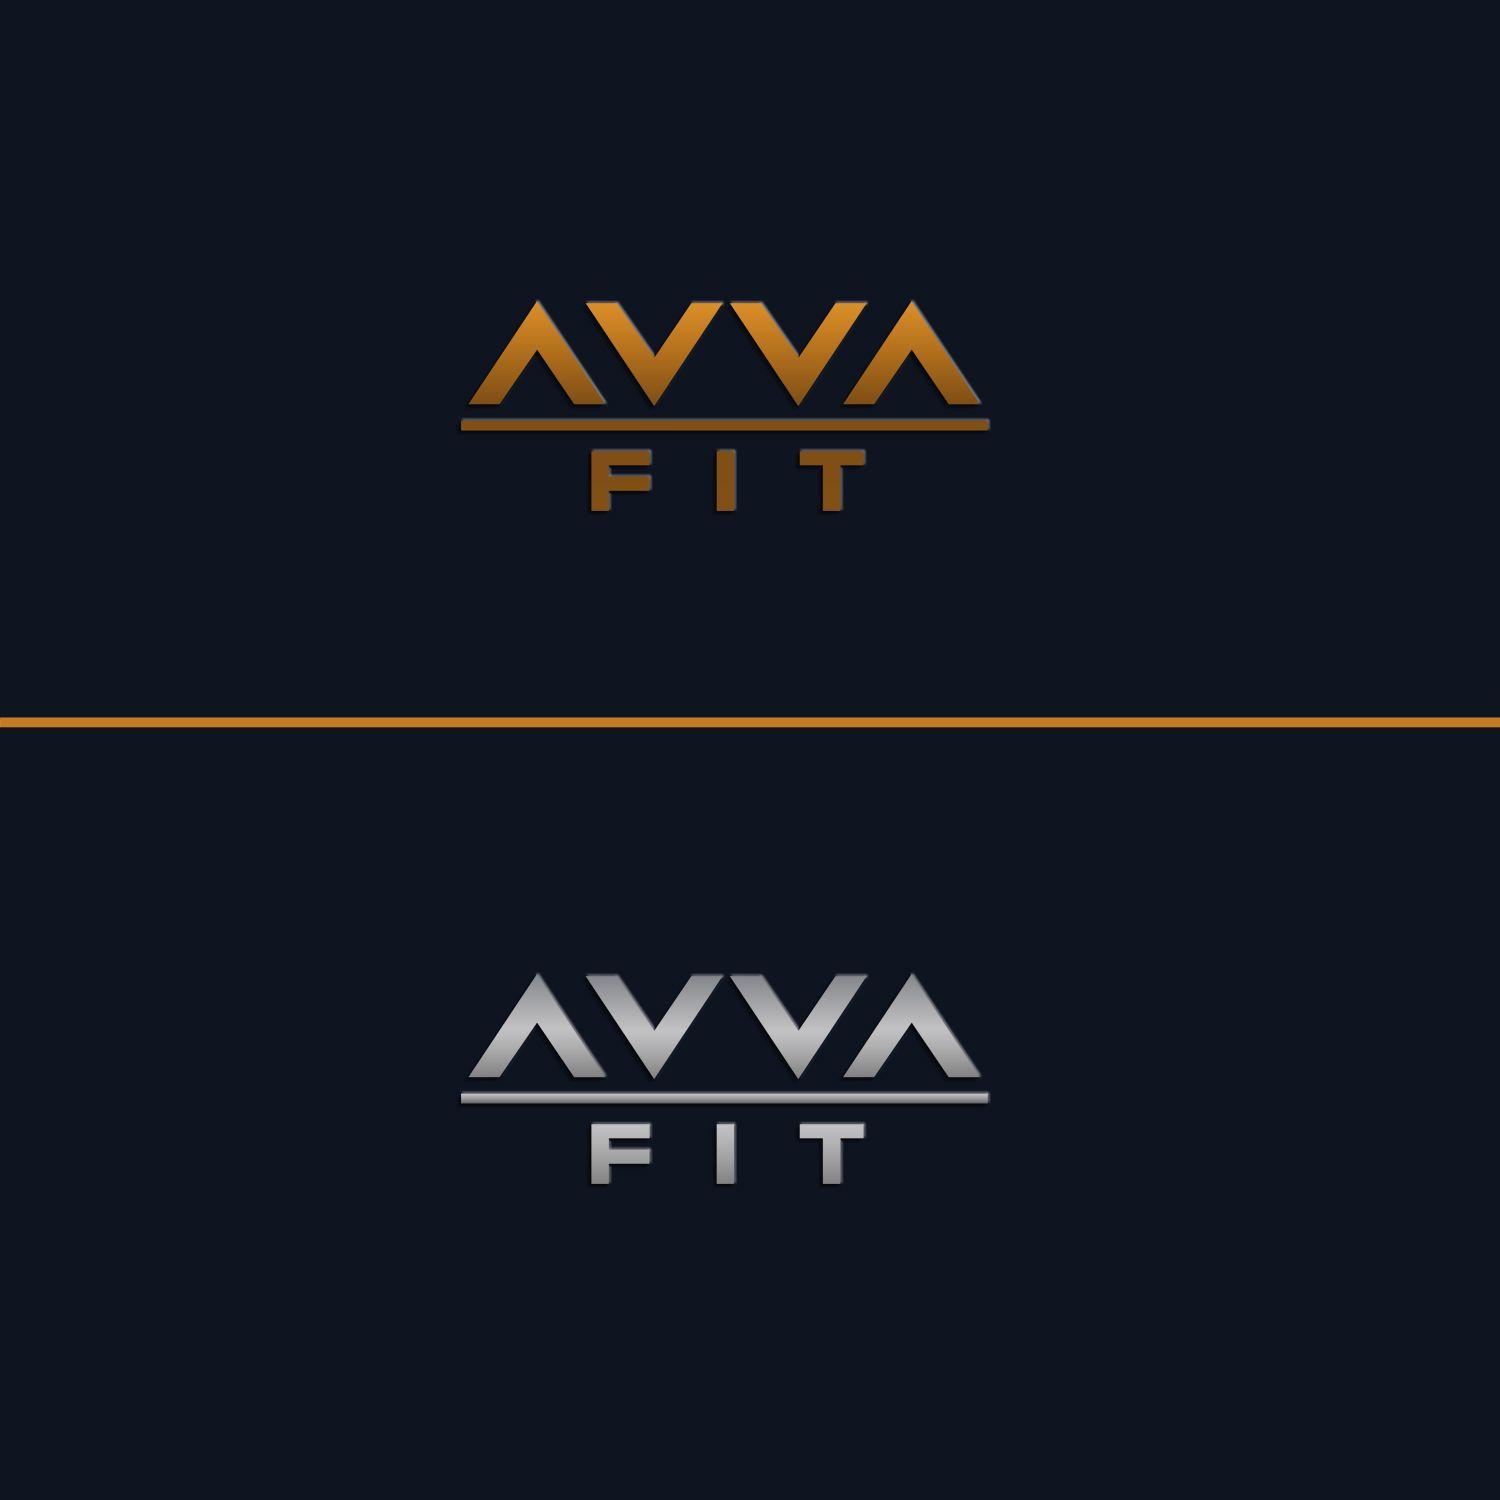 Avva Logo - Logo Design for AVVA FIT by Lesia_Olesia | Design #20607639